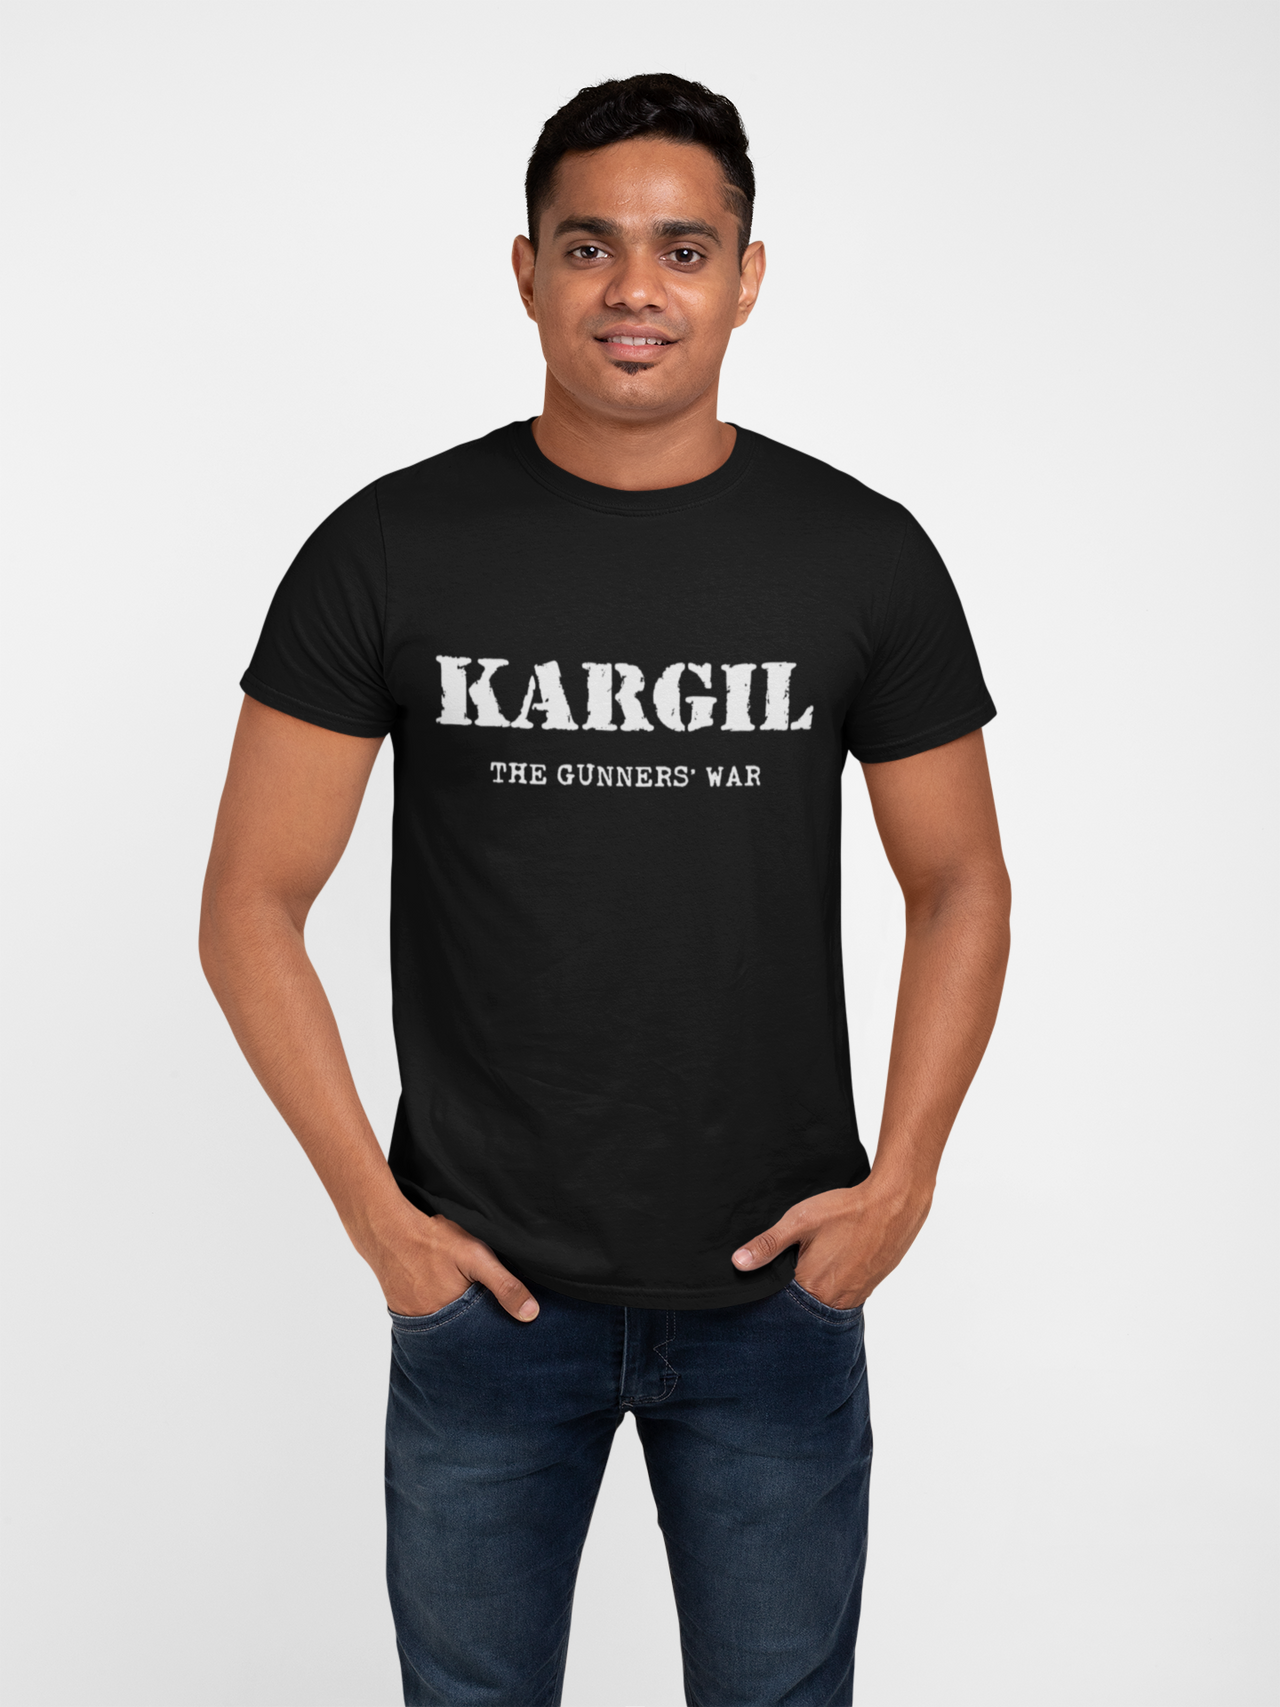 Artillery T-shirt - Kargil, The Gunners' War (Men)